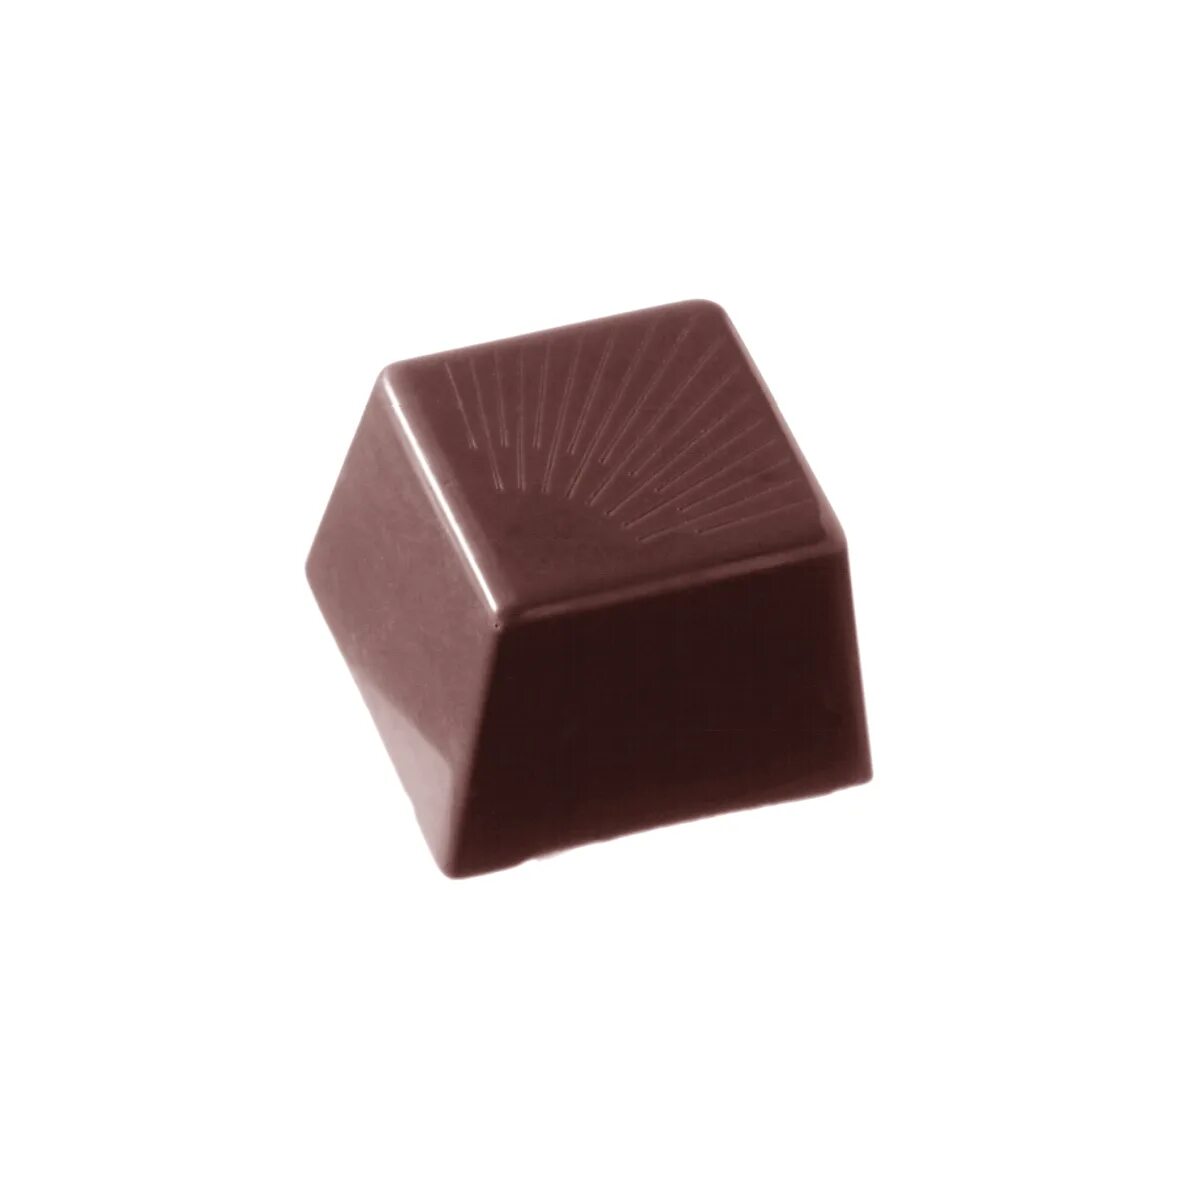 Шоколад квадрат. Конфеты квадратные шоколадные. Квадратная форма для шоколада. Шоколадные конфеты квадратной формы. Конфеты квадратные шоколадные плоские.